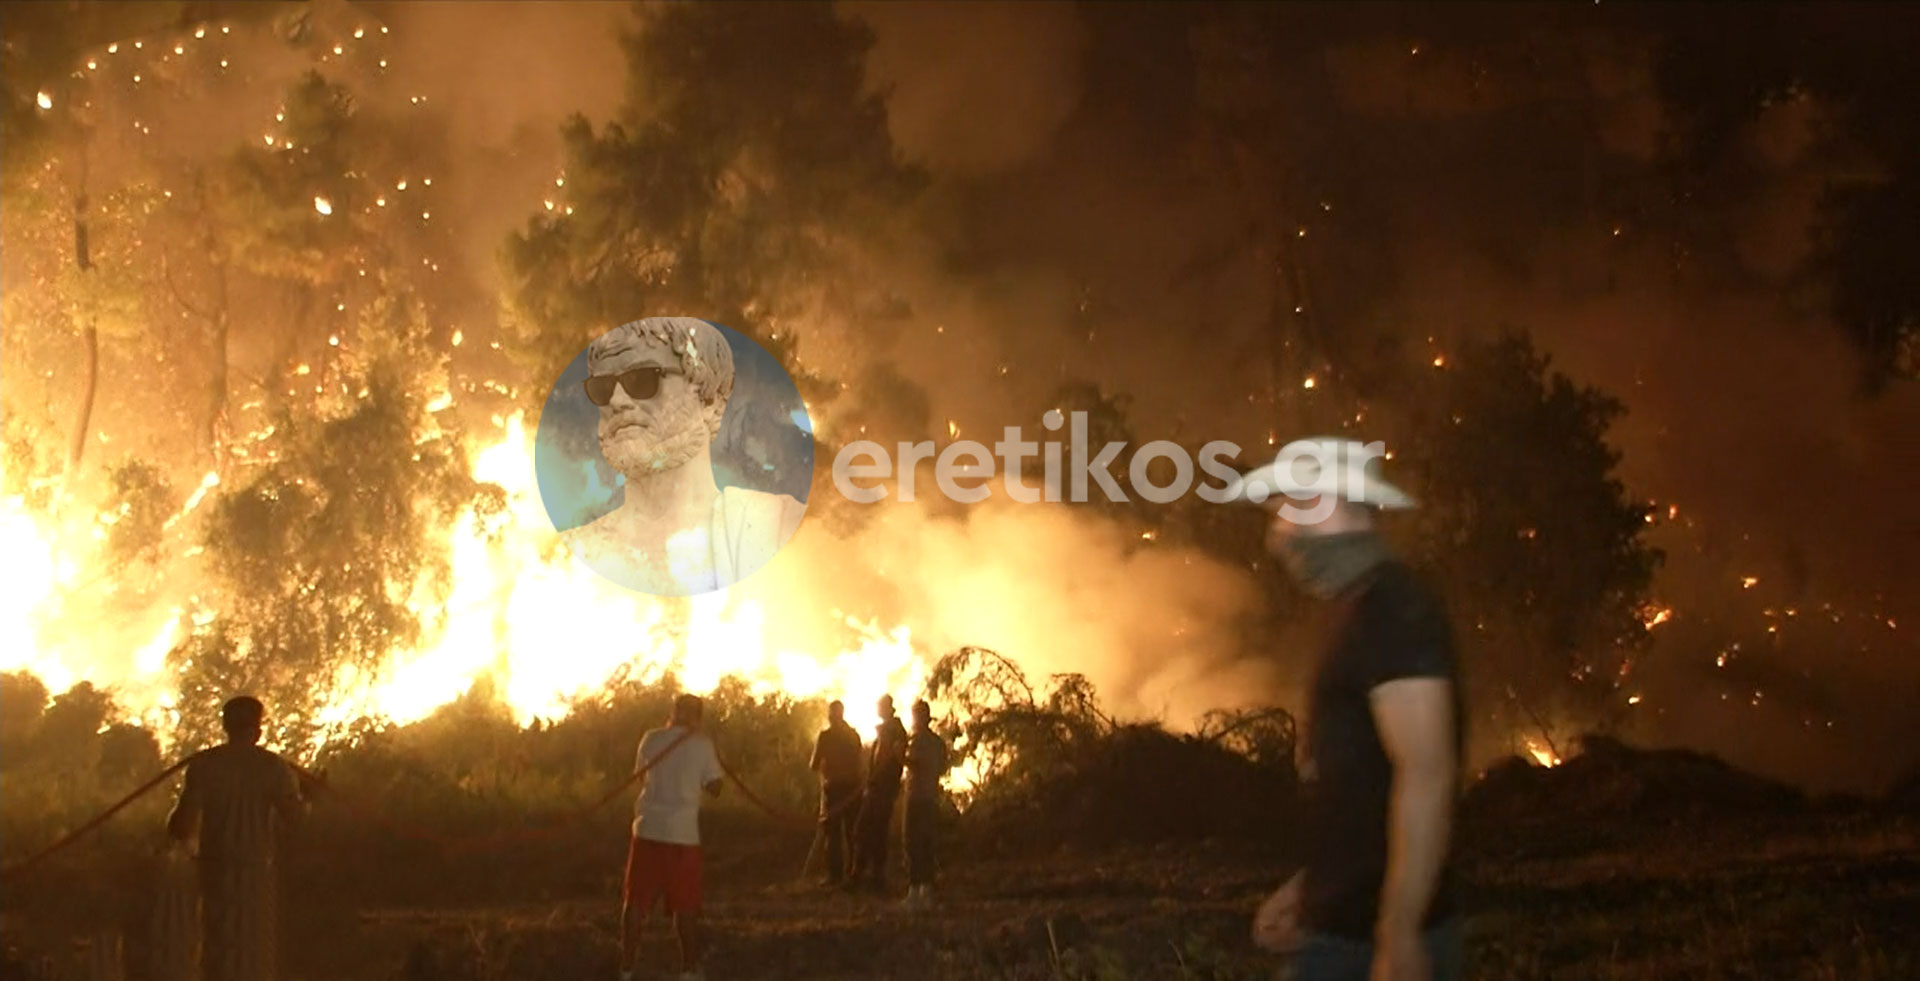 Μητσοτάκης-Γεραπετρίτης πήραν SOS για τις φωτιές αλλά το αγνόησαν